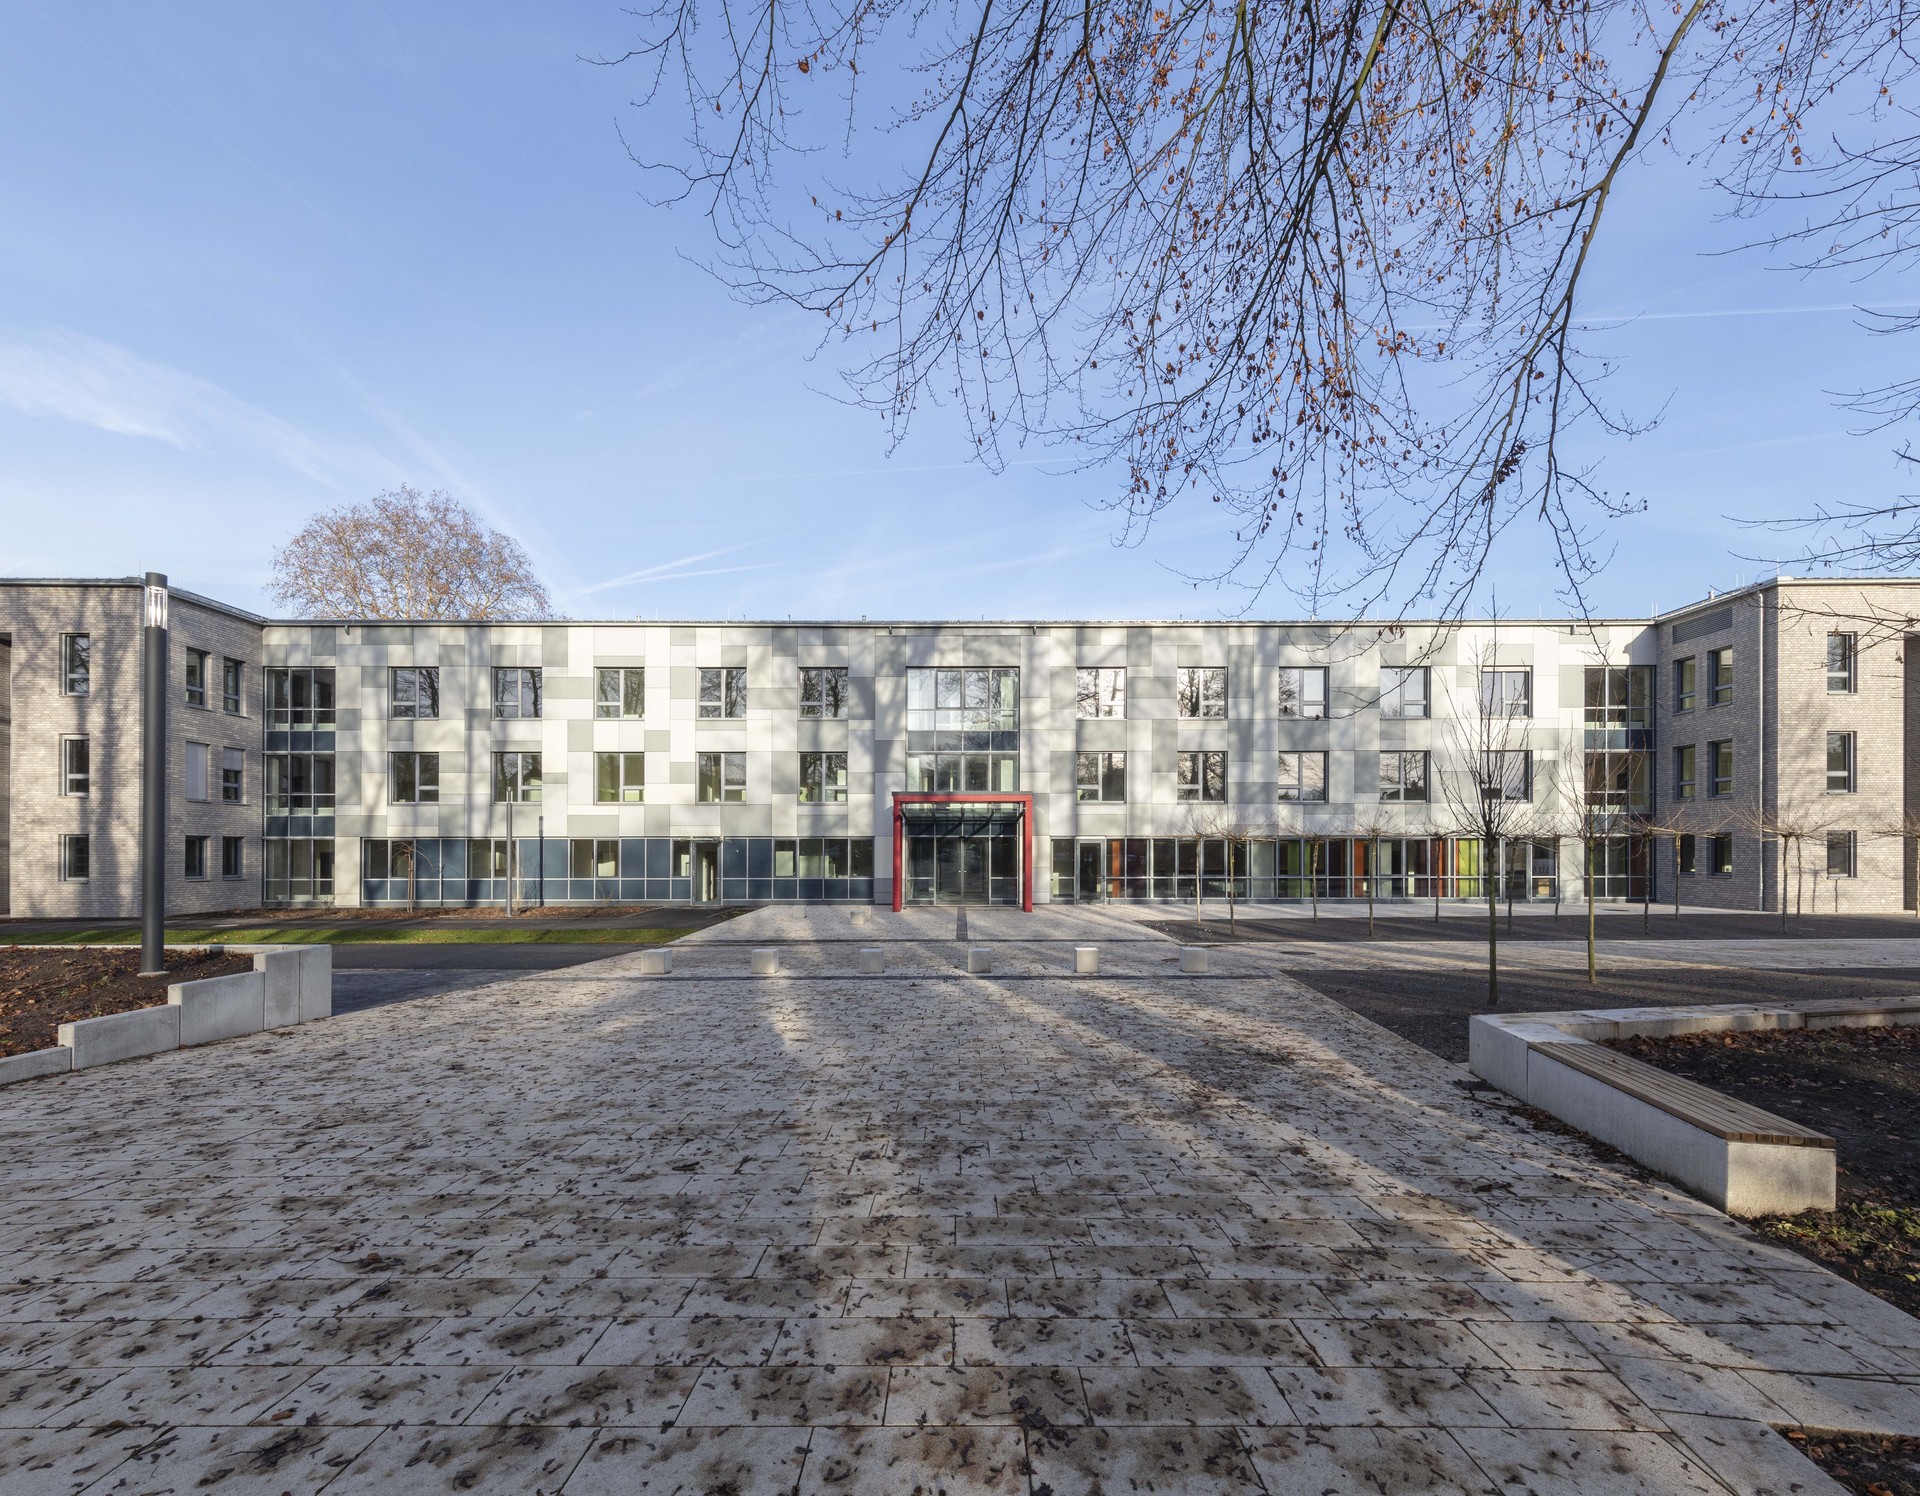 Münster, Ersatzneubau eines Klinikgebäudes mit 140 Betten für die LWL-Klinik Münster.
Bild: PODEHL Fotodesign